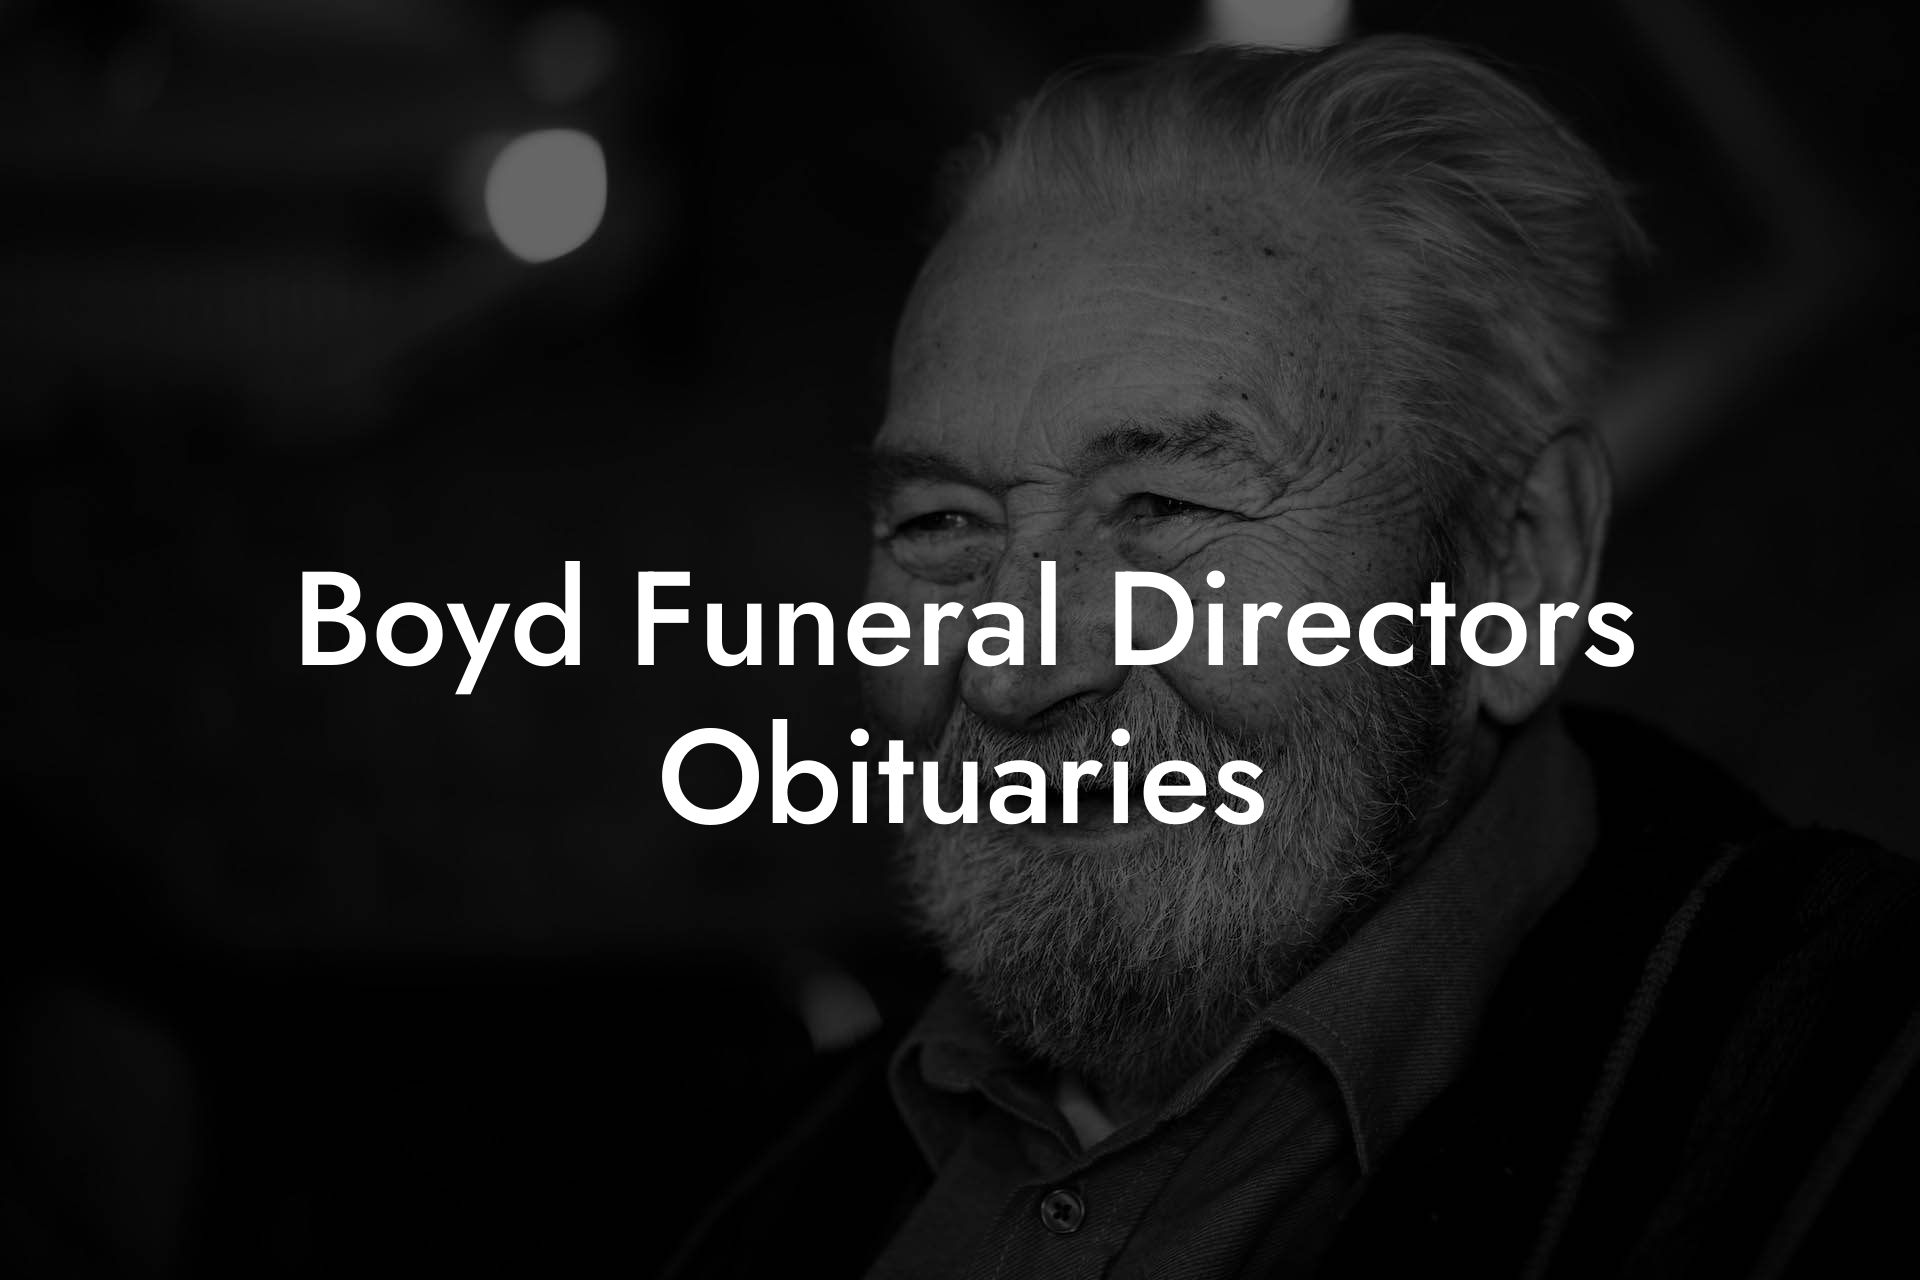 Boyd Funeral Directors Obituaries